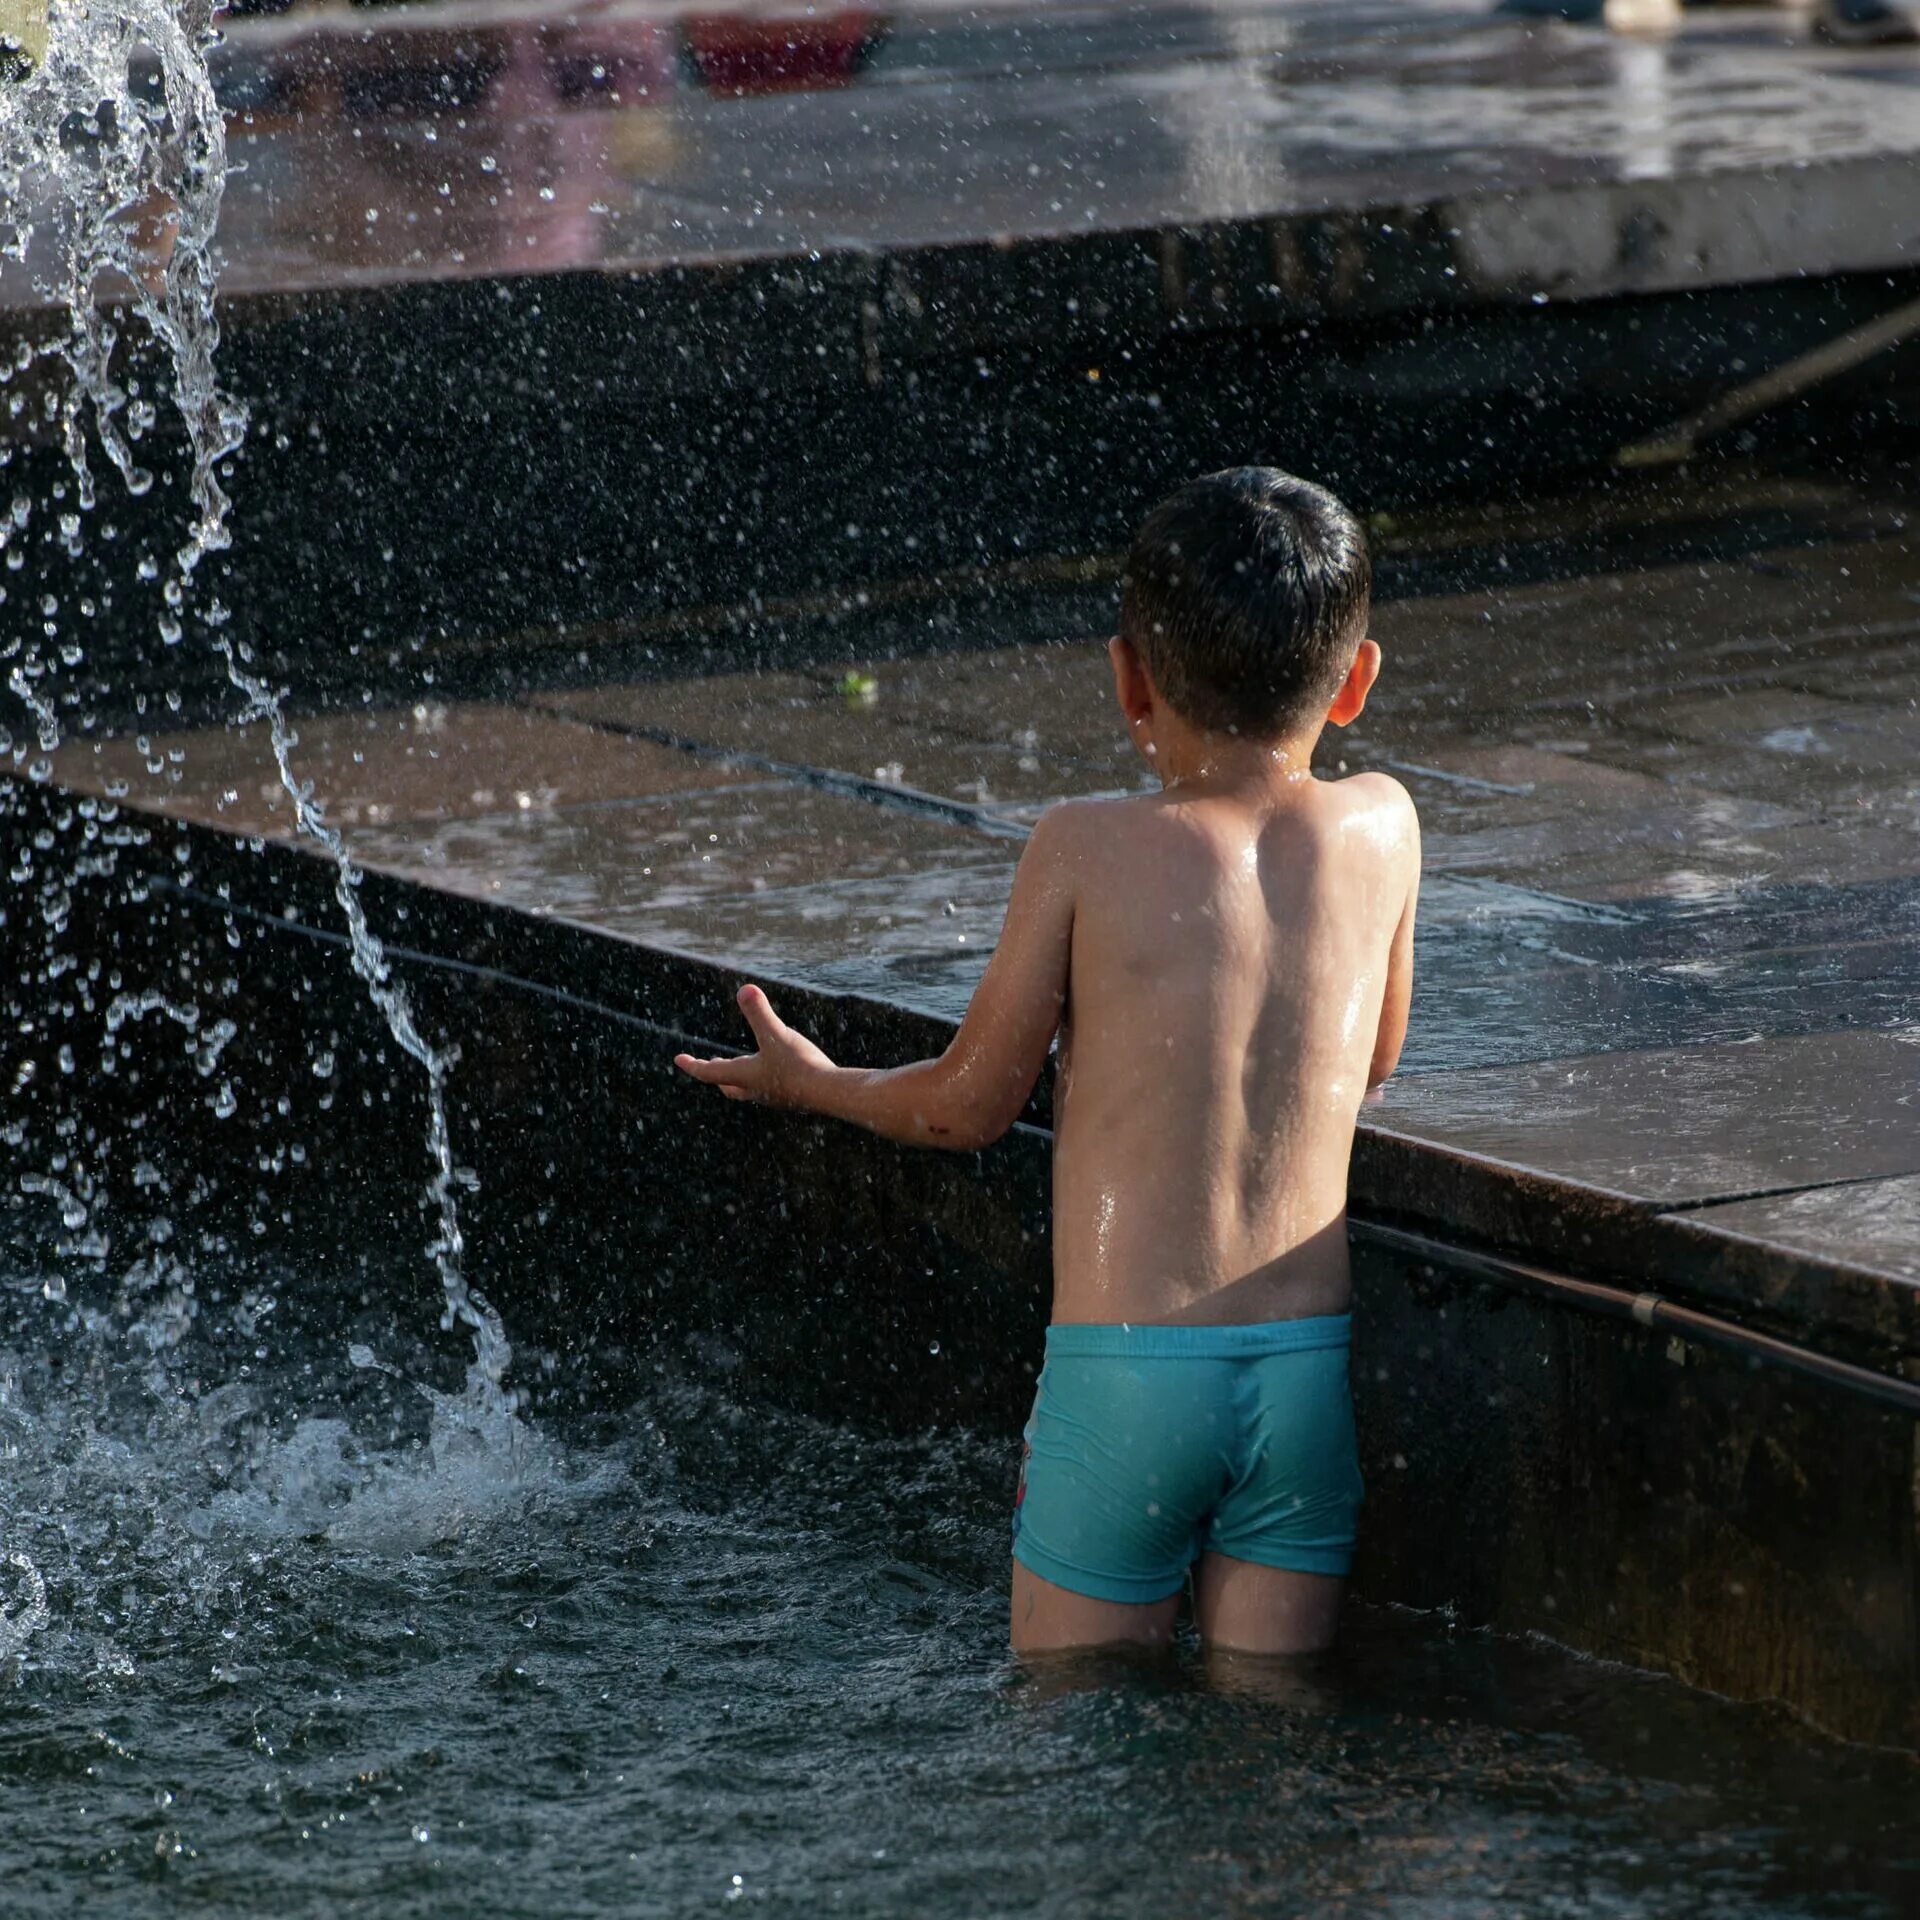 Мальчики купаются вместе. Пацаны купаются. Мальчики купаются в фонтане. Мальчик купается в одежде. Полный мальчик купается.